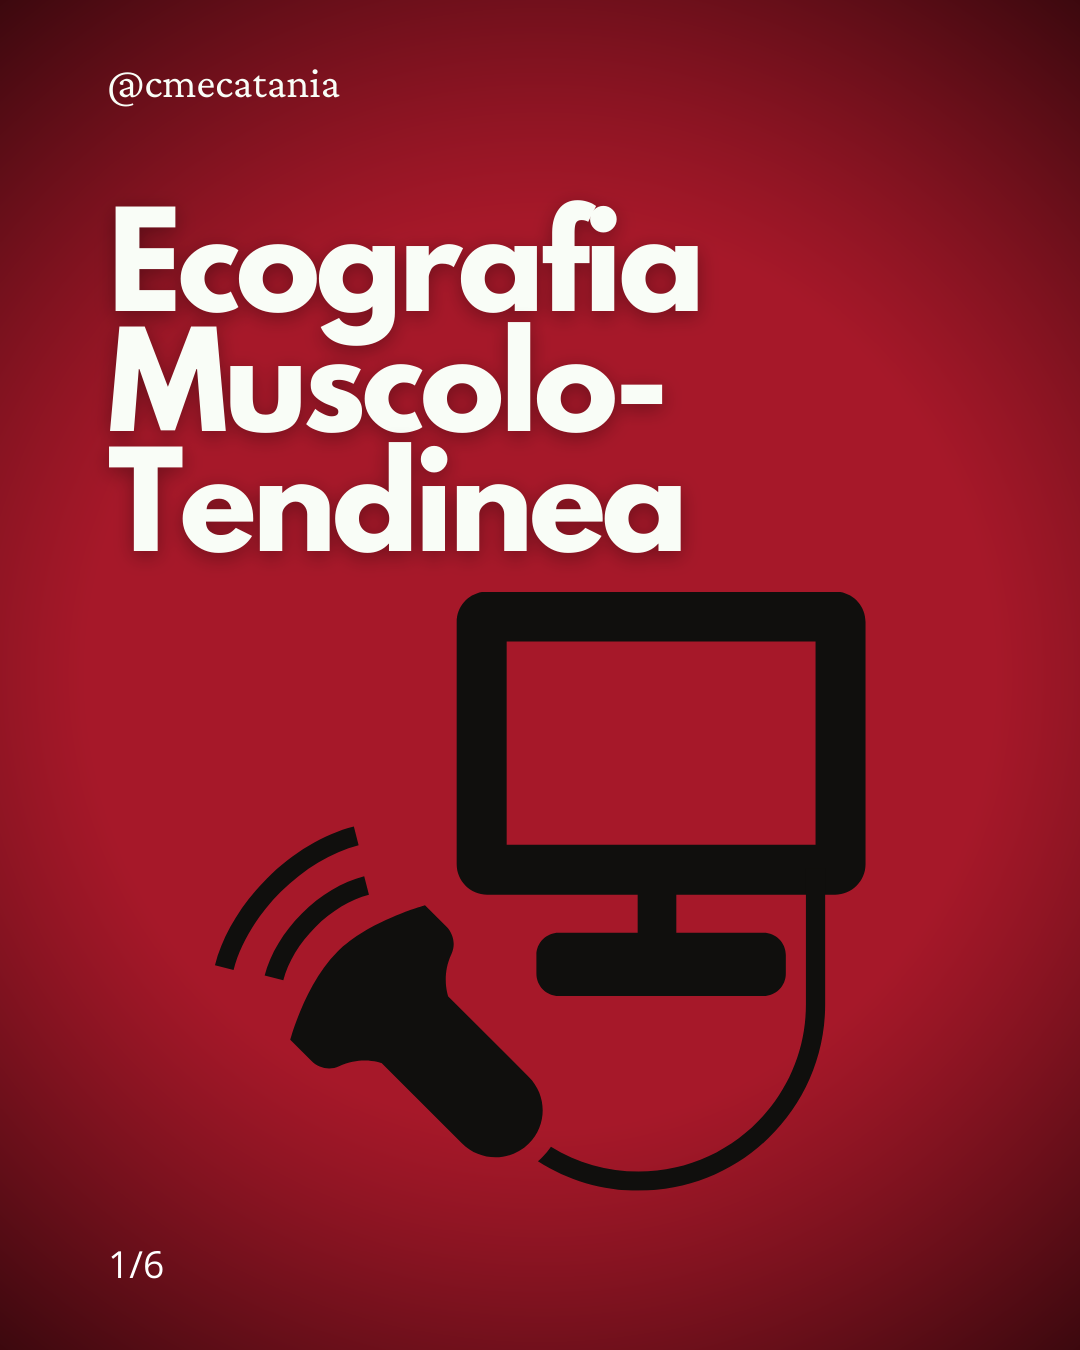 Ecografia Muscolo-Tendinea